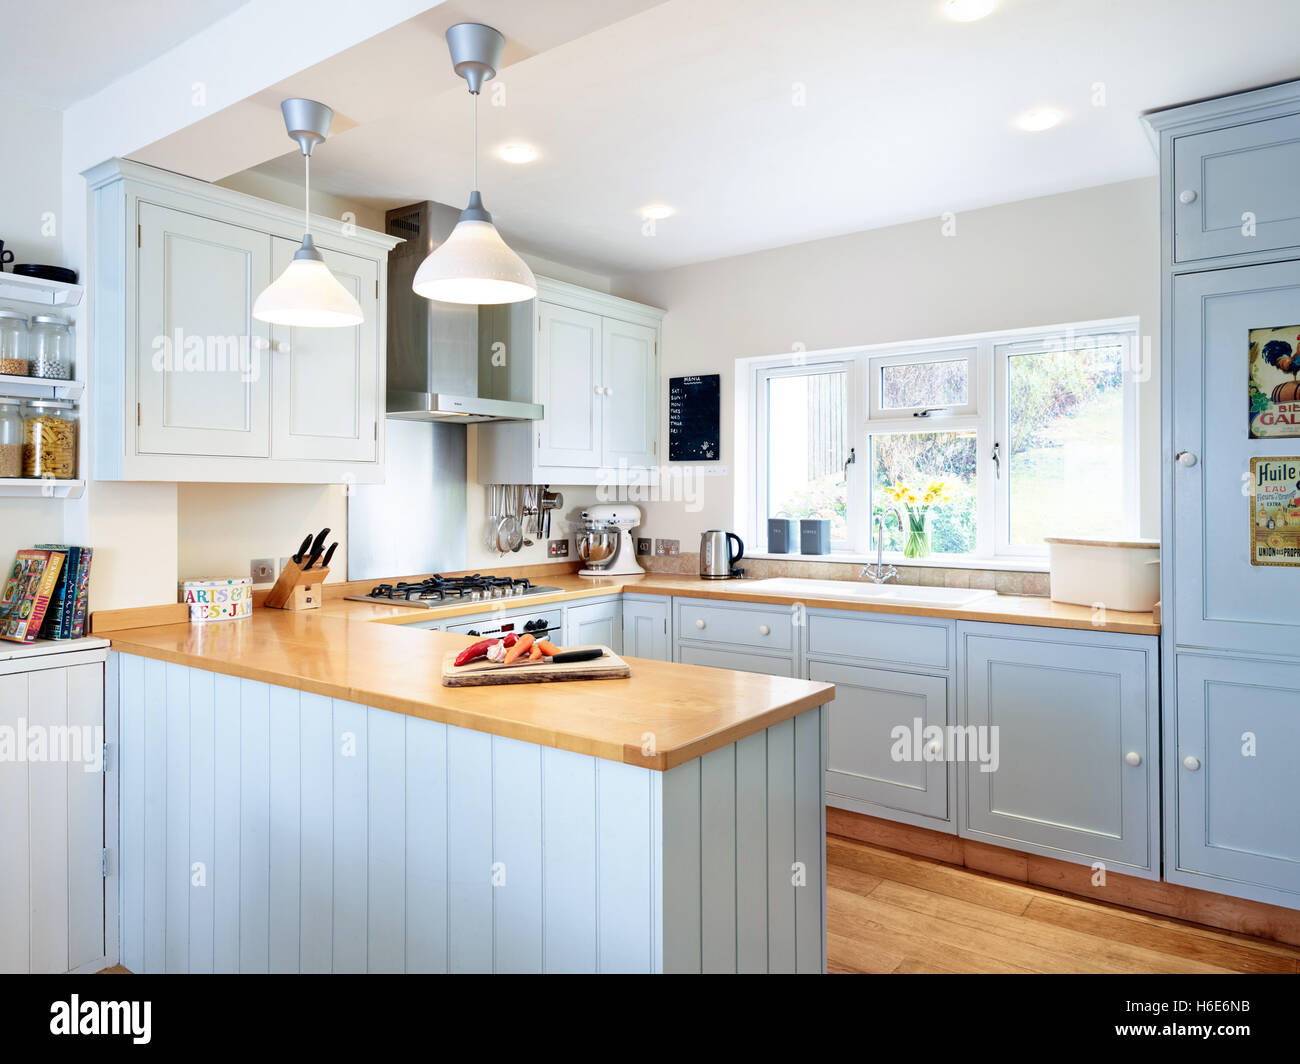 Eine moderne, frische Küche mit integriertem Backofen, Herd, Haube & Holz Arbeitsflächen. Gloucestershire, Vereinigtes Königreich Stockfoto